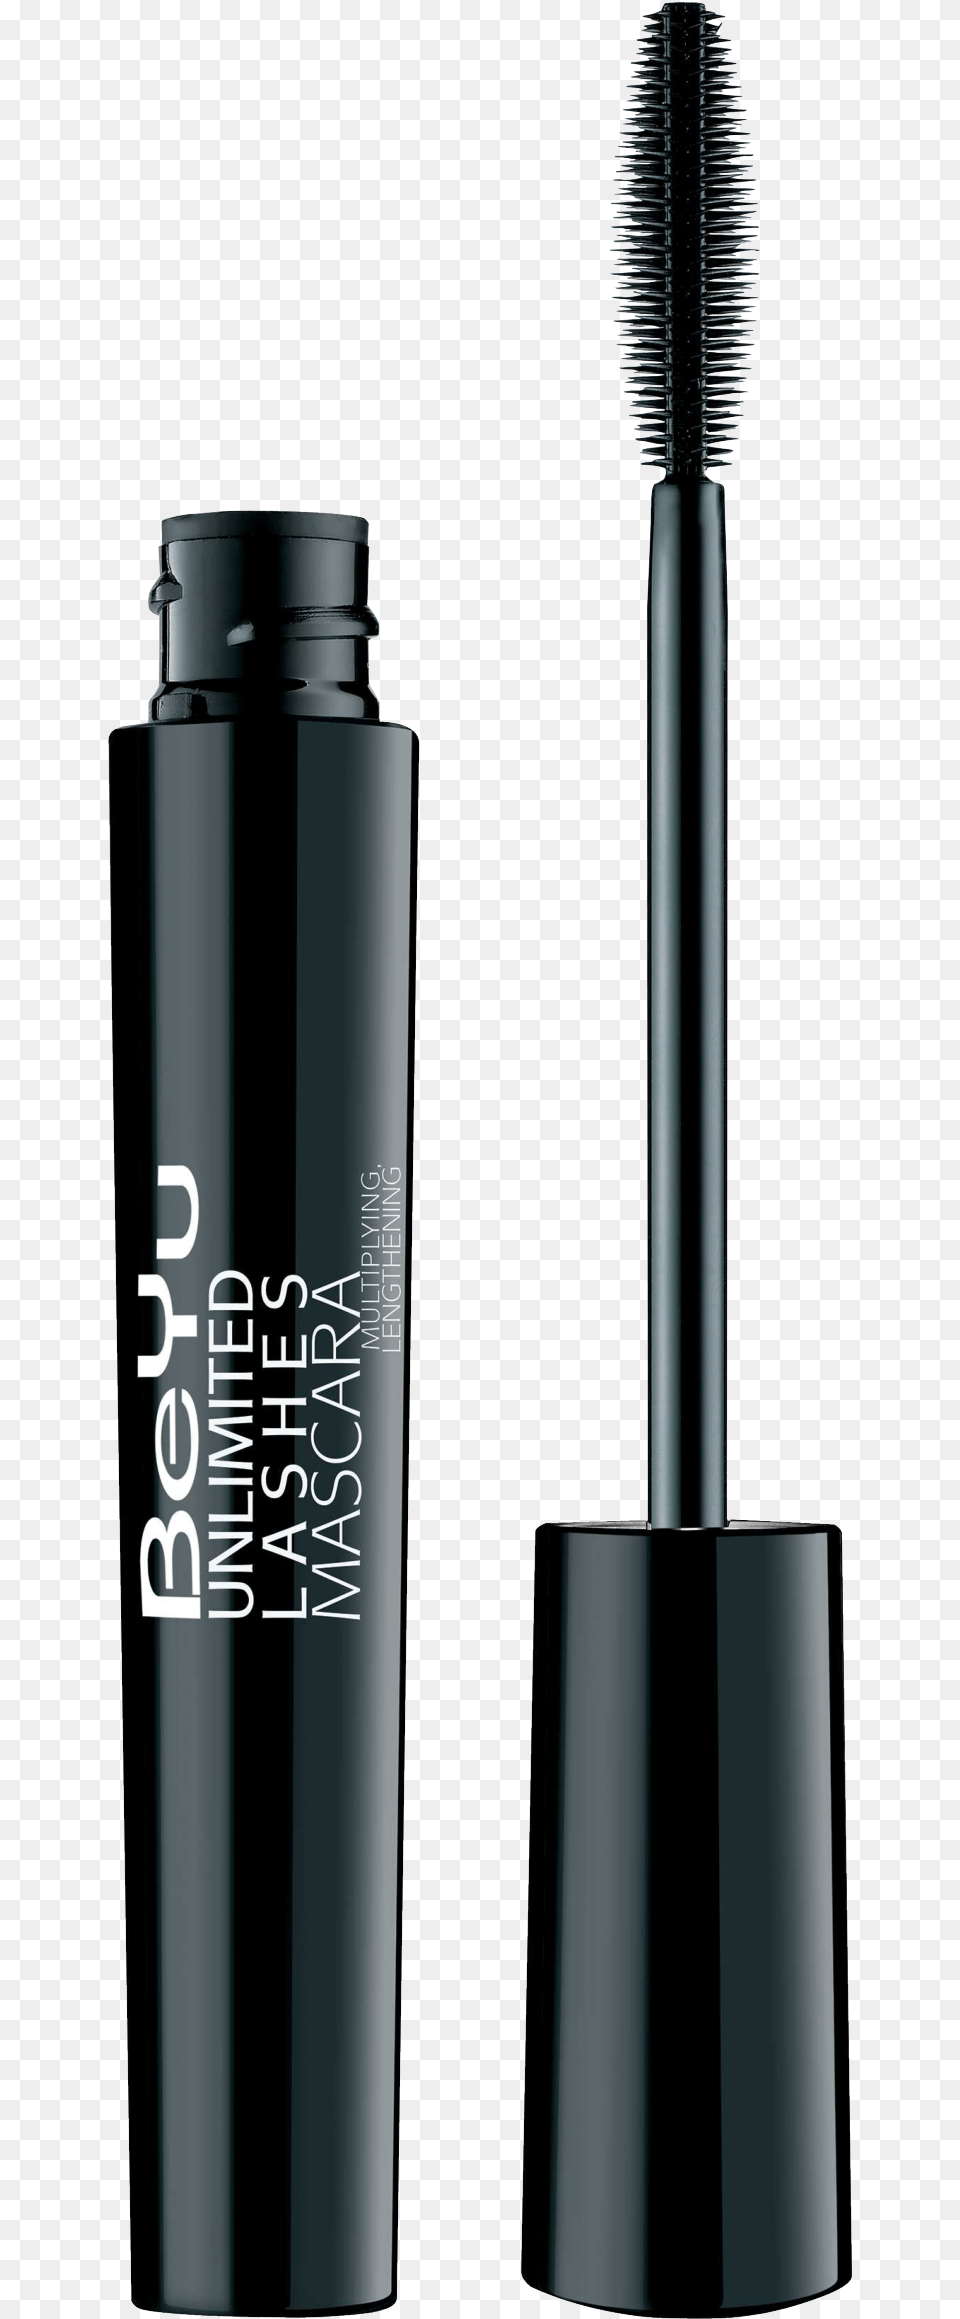 Mascara, Cosmetics, Bottle, Shaker Png Image